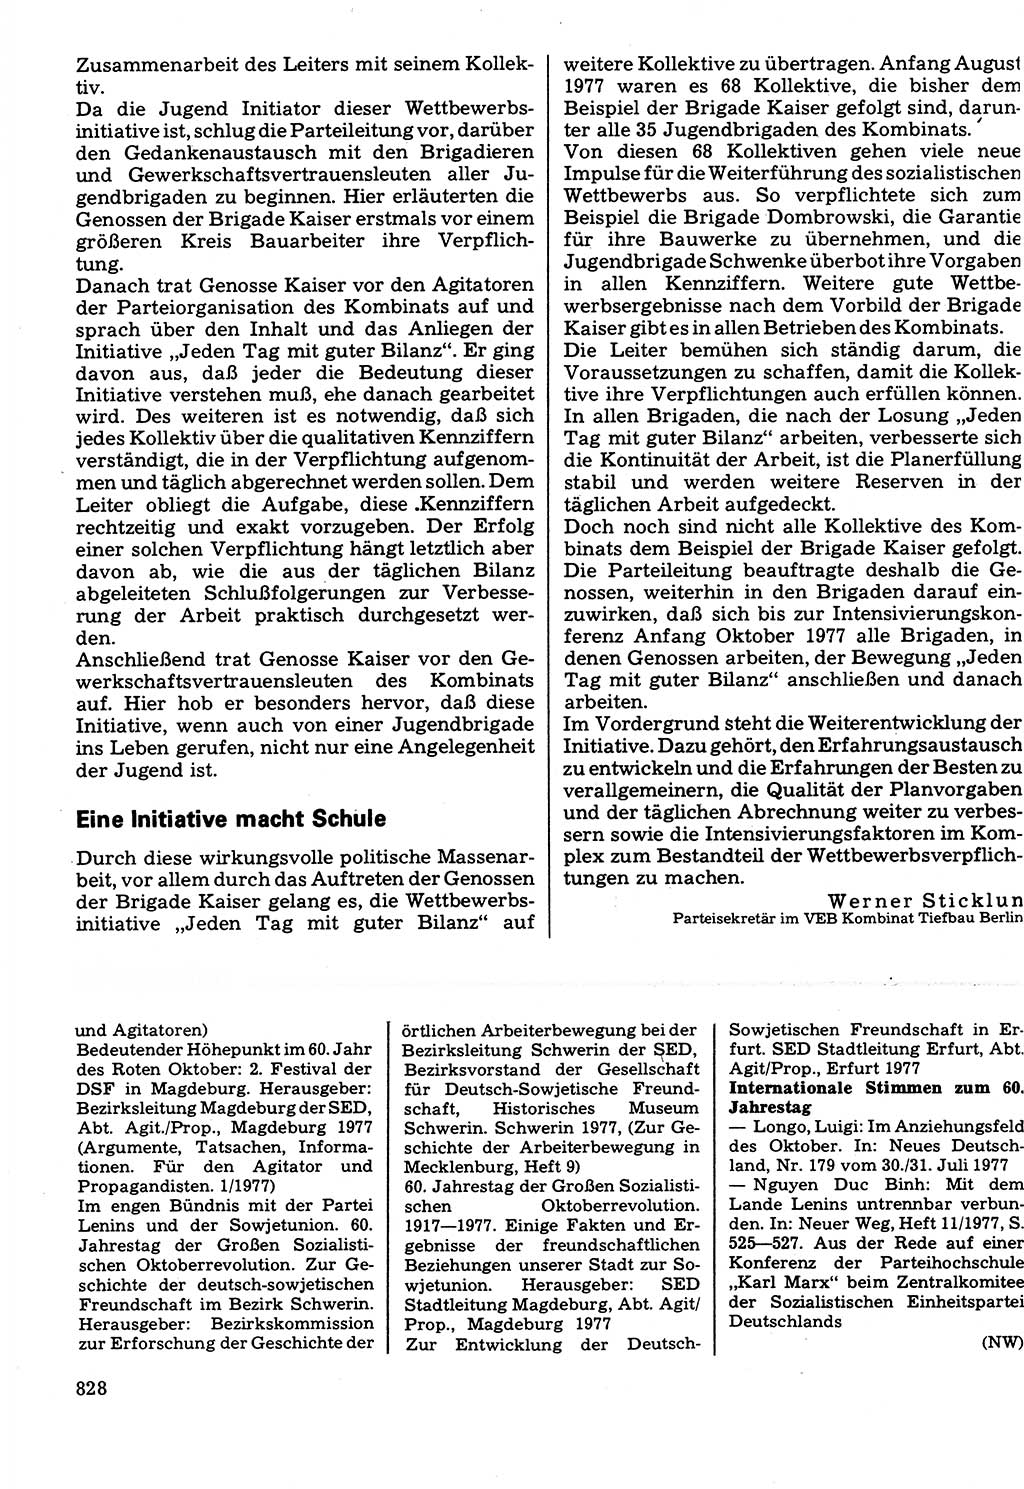 Neuer Weg (NW), Organ des Zentralkomitees (ZK) der SED (Sozialistische Einheitspartei Deutschlands) für Fragen des Parteilebens, 32. Jahrgang [Deutsche Demokratische Republik (DDR)] 1977, Seite 828 (NW ZK SED DDR 1977, S. 828)